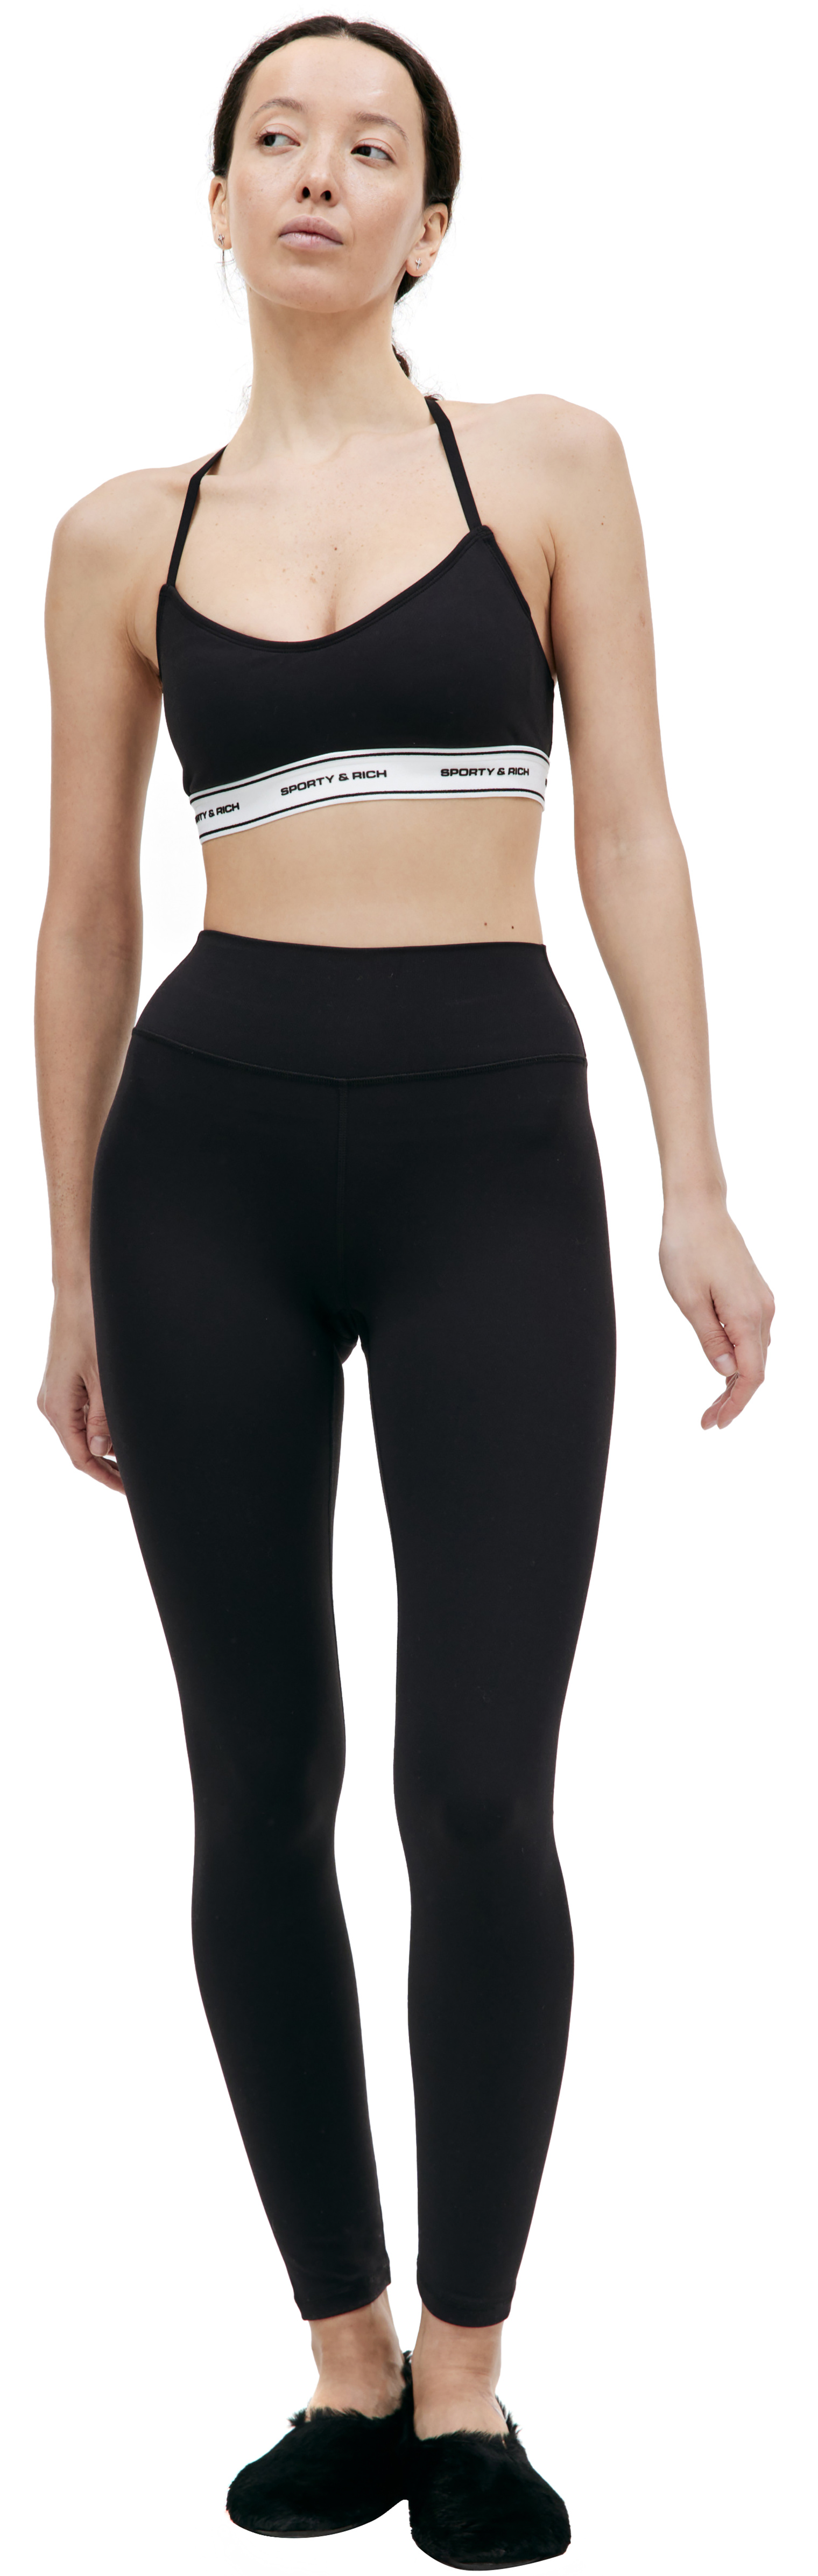 Buy SPORTY & RICH women black sr bold leggings for $153 online on